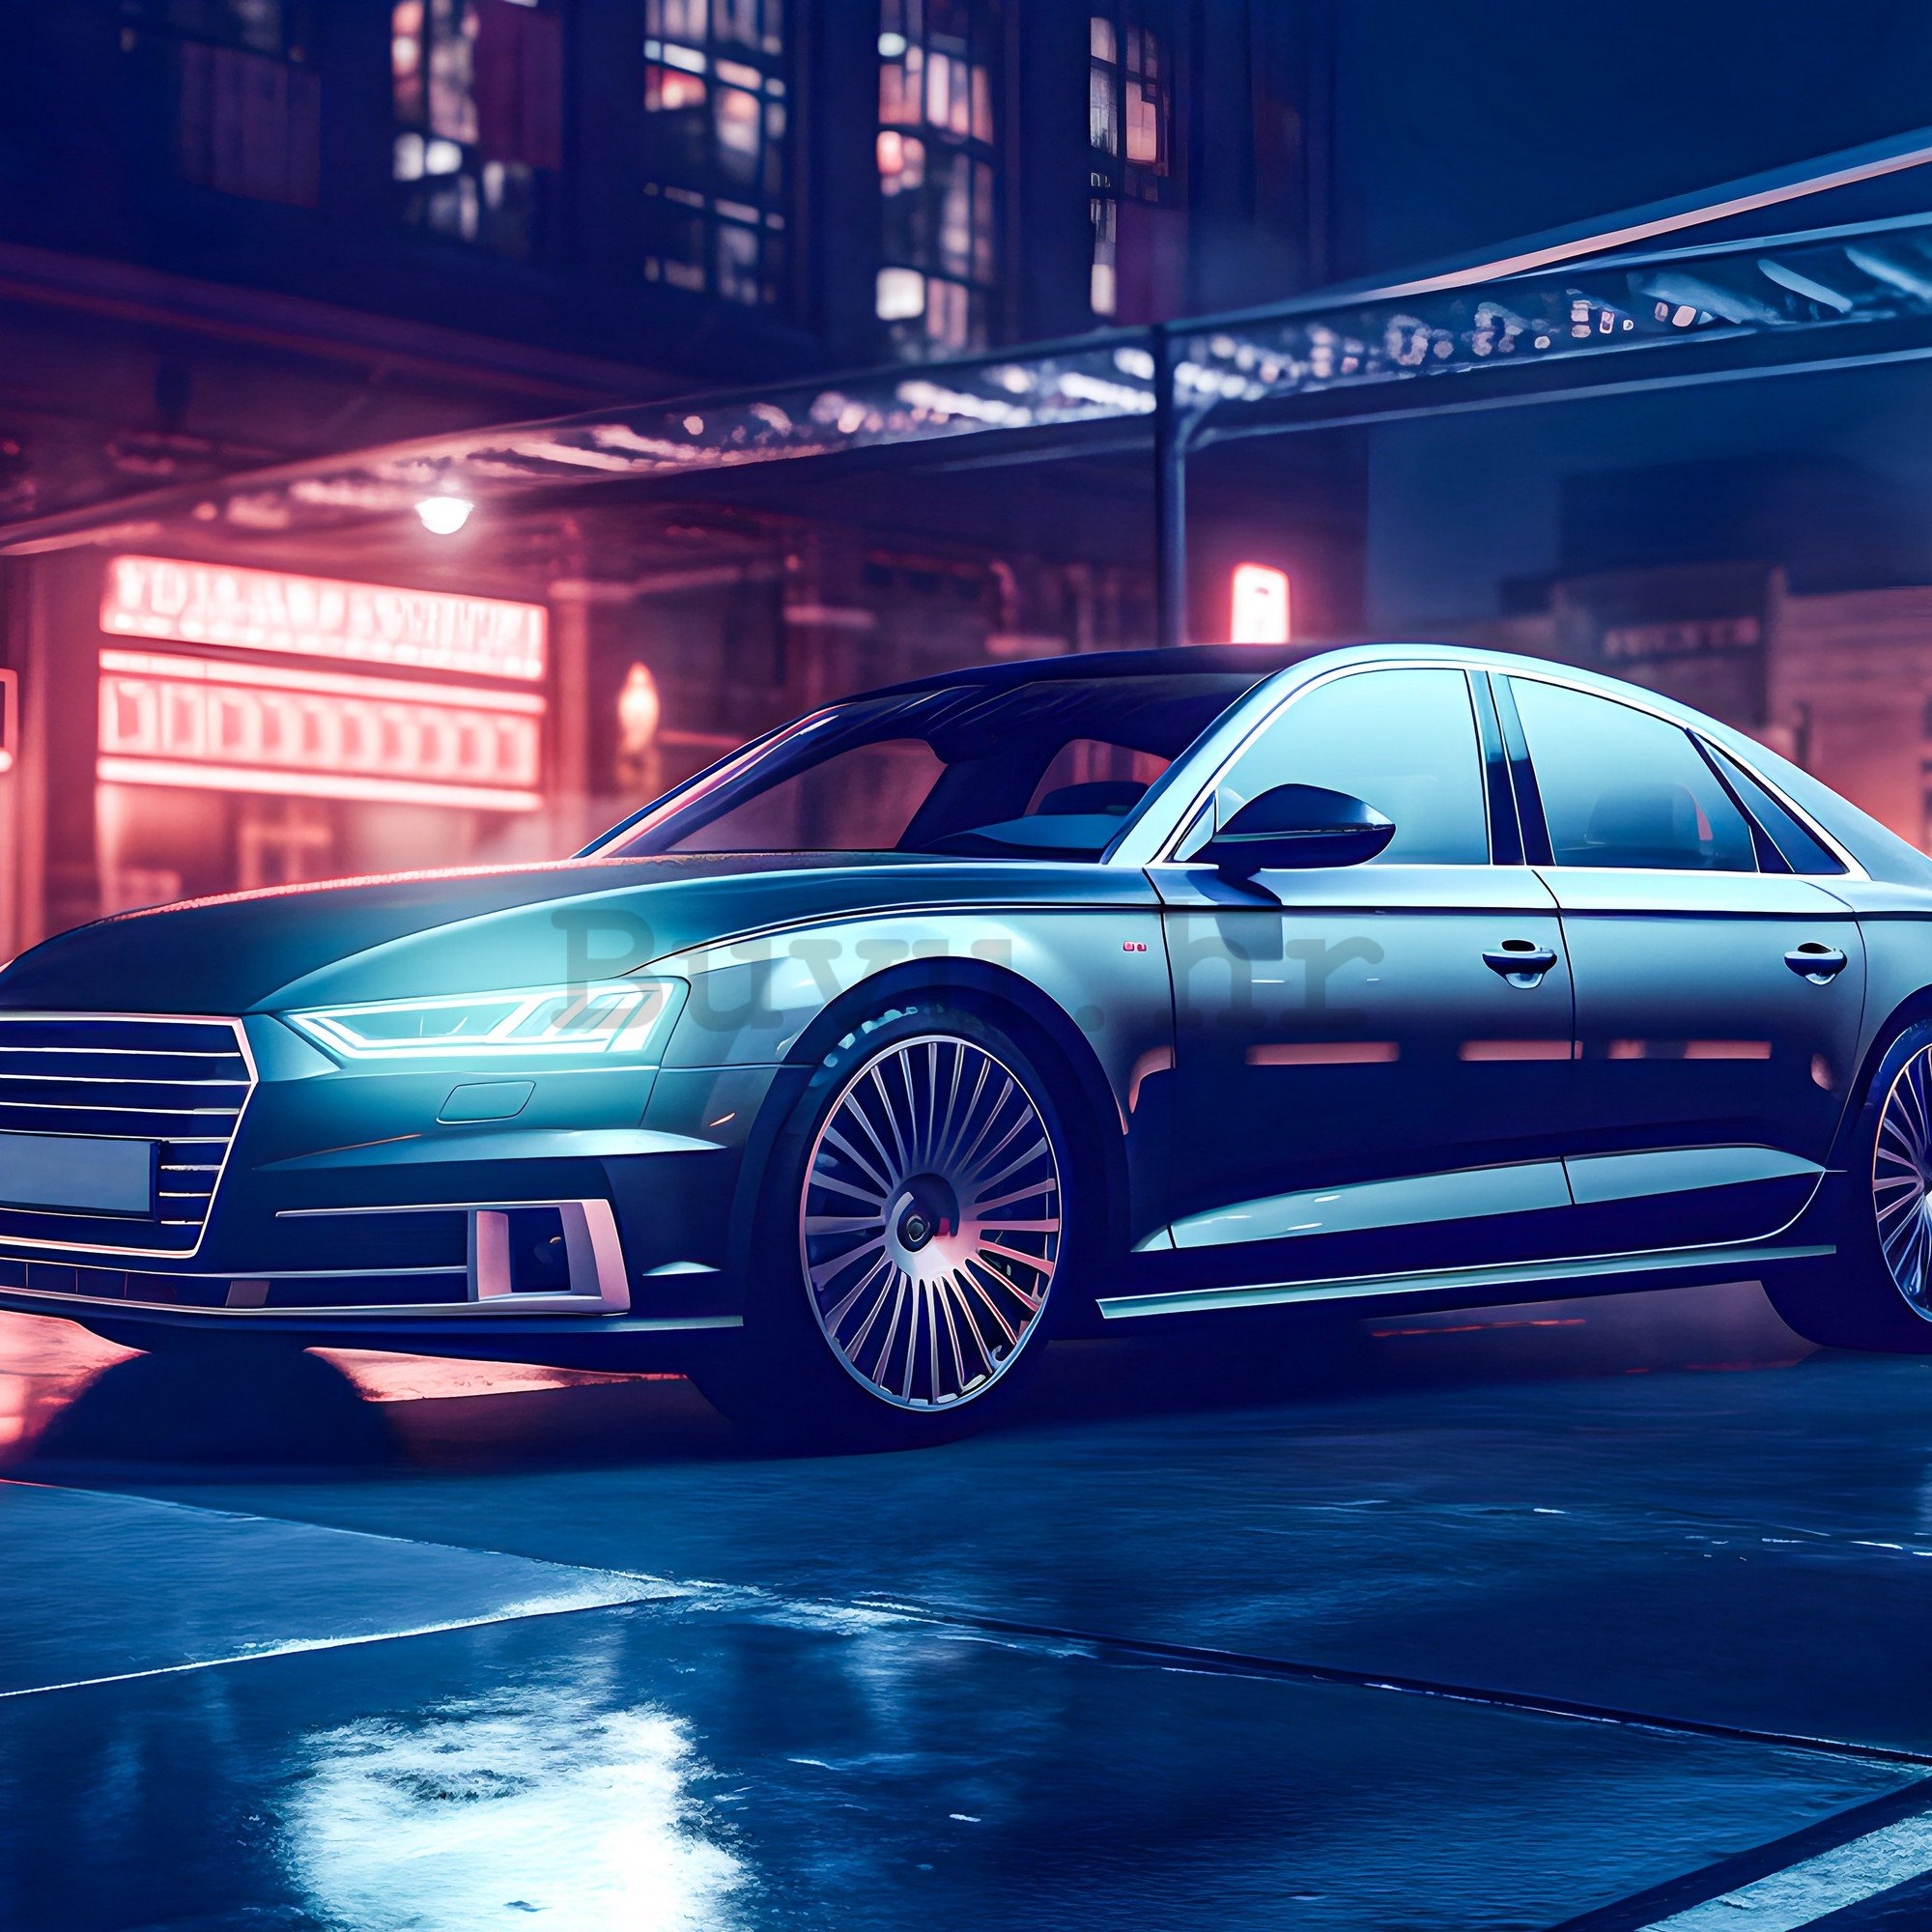 Vlies foto tapeta: Car Audi city neon - 152,5x104 cm